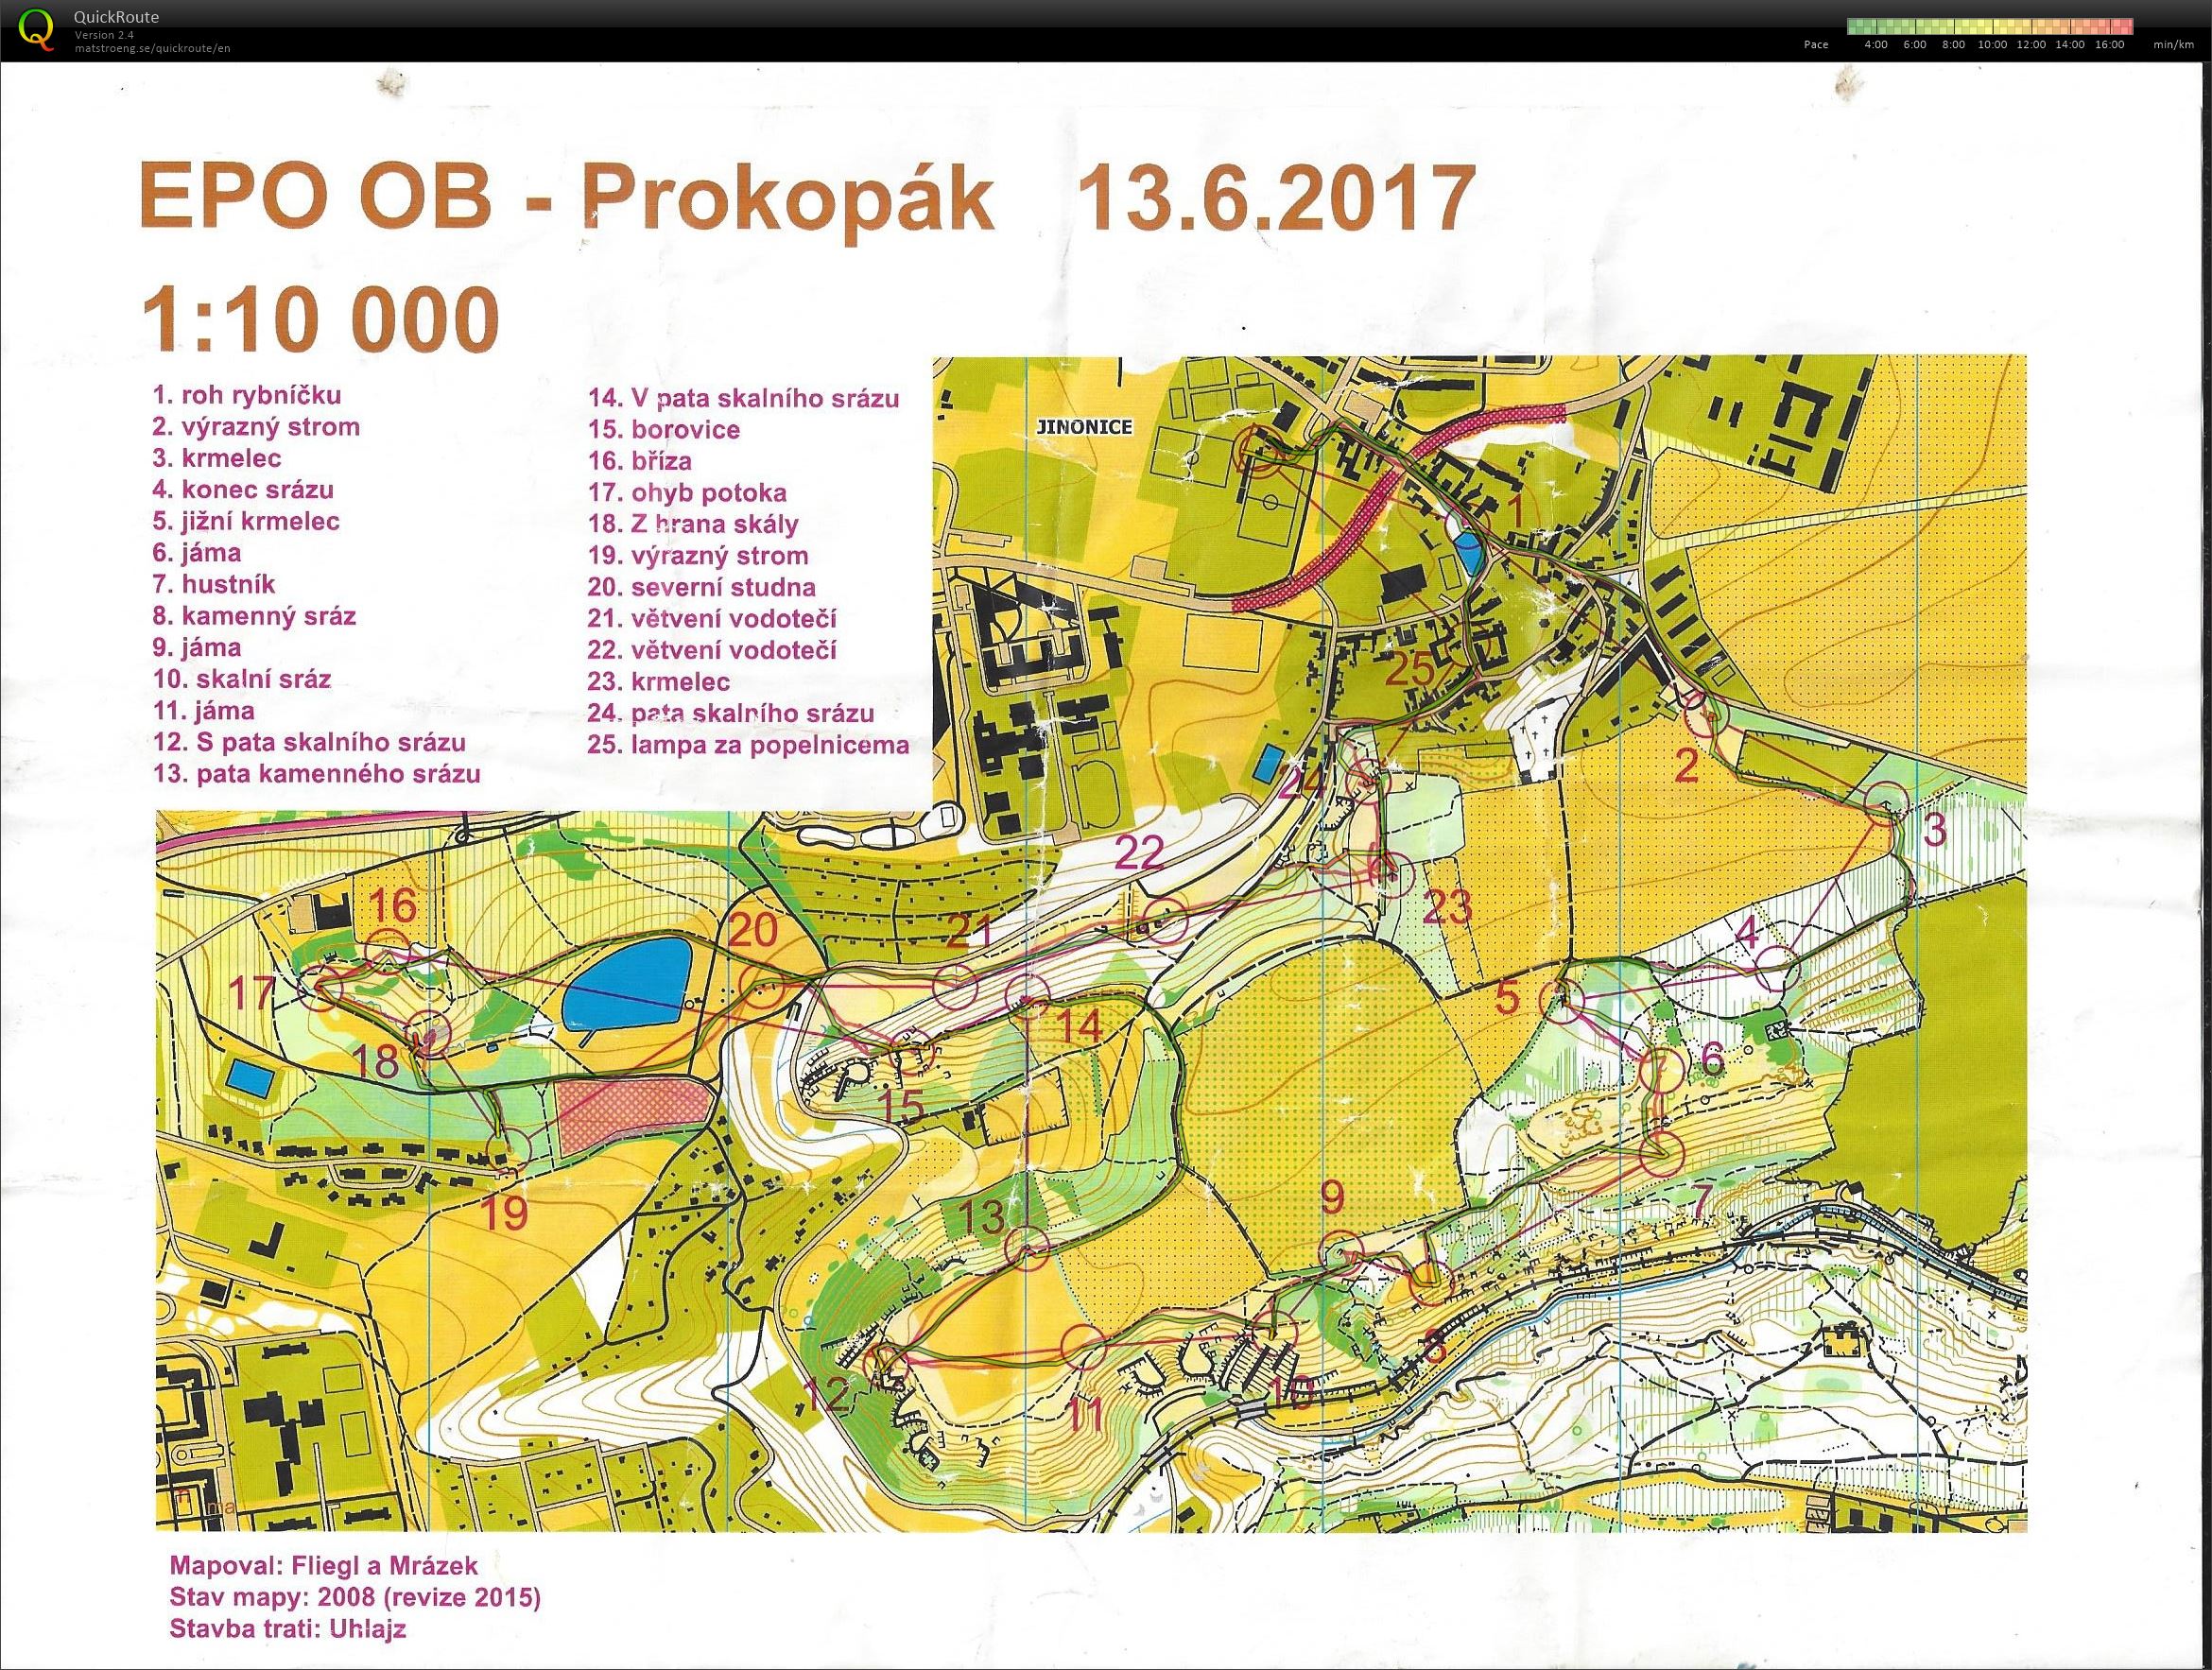 EPO OB - Prokopák (2017-06-13)